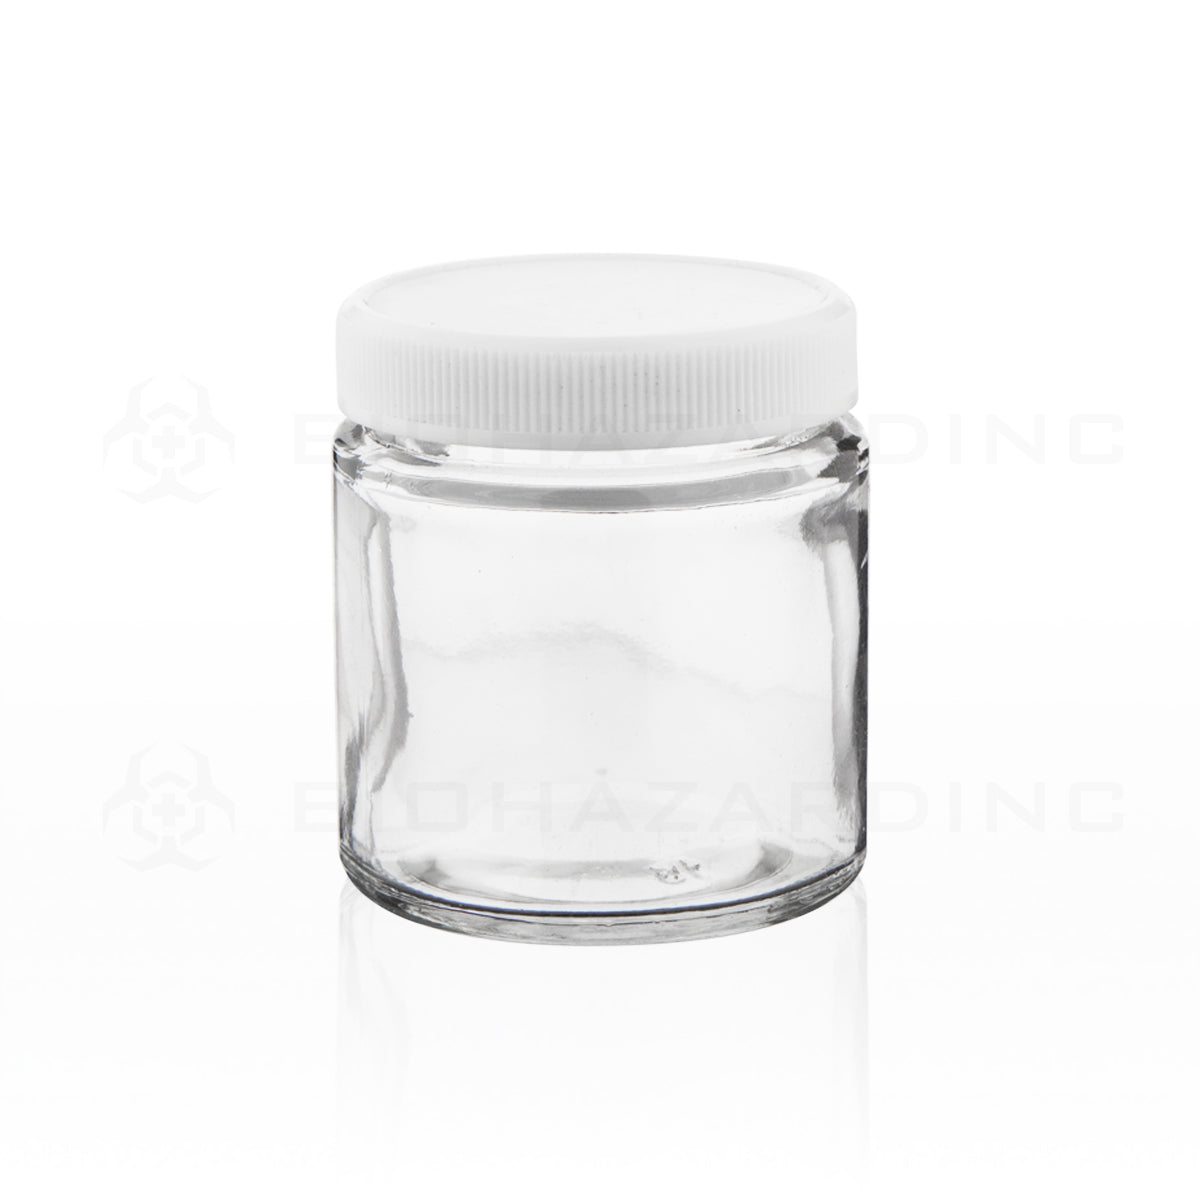 Glass Jar | Straight Sided Clear Glass Jars w/ White Caps | 3.5oz - 24 Count Glass Jar Biohazard Inc   